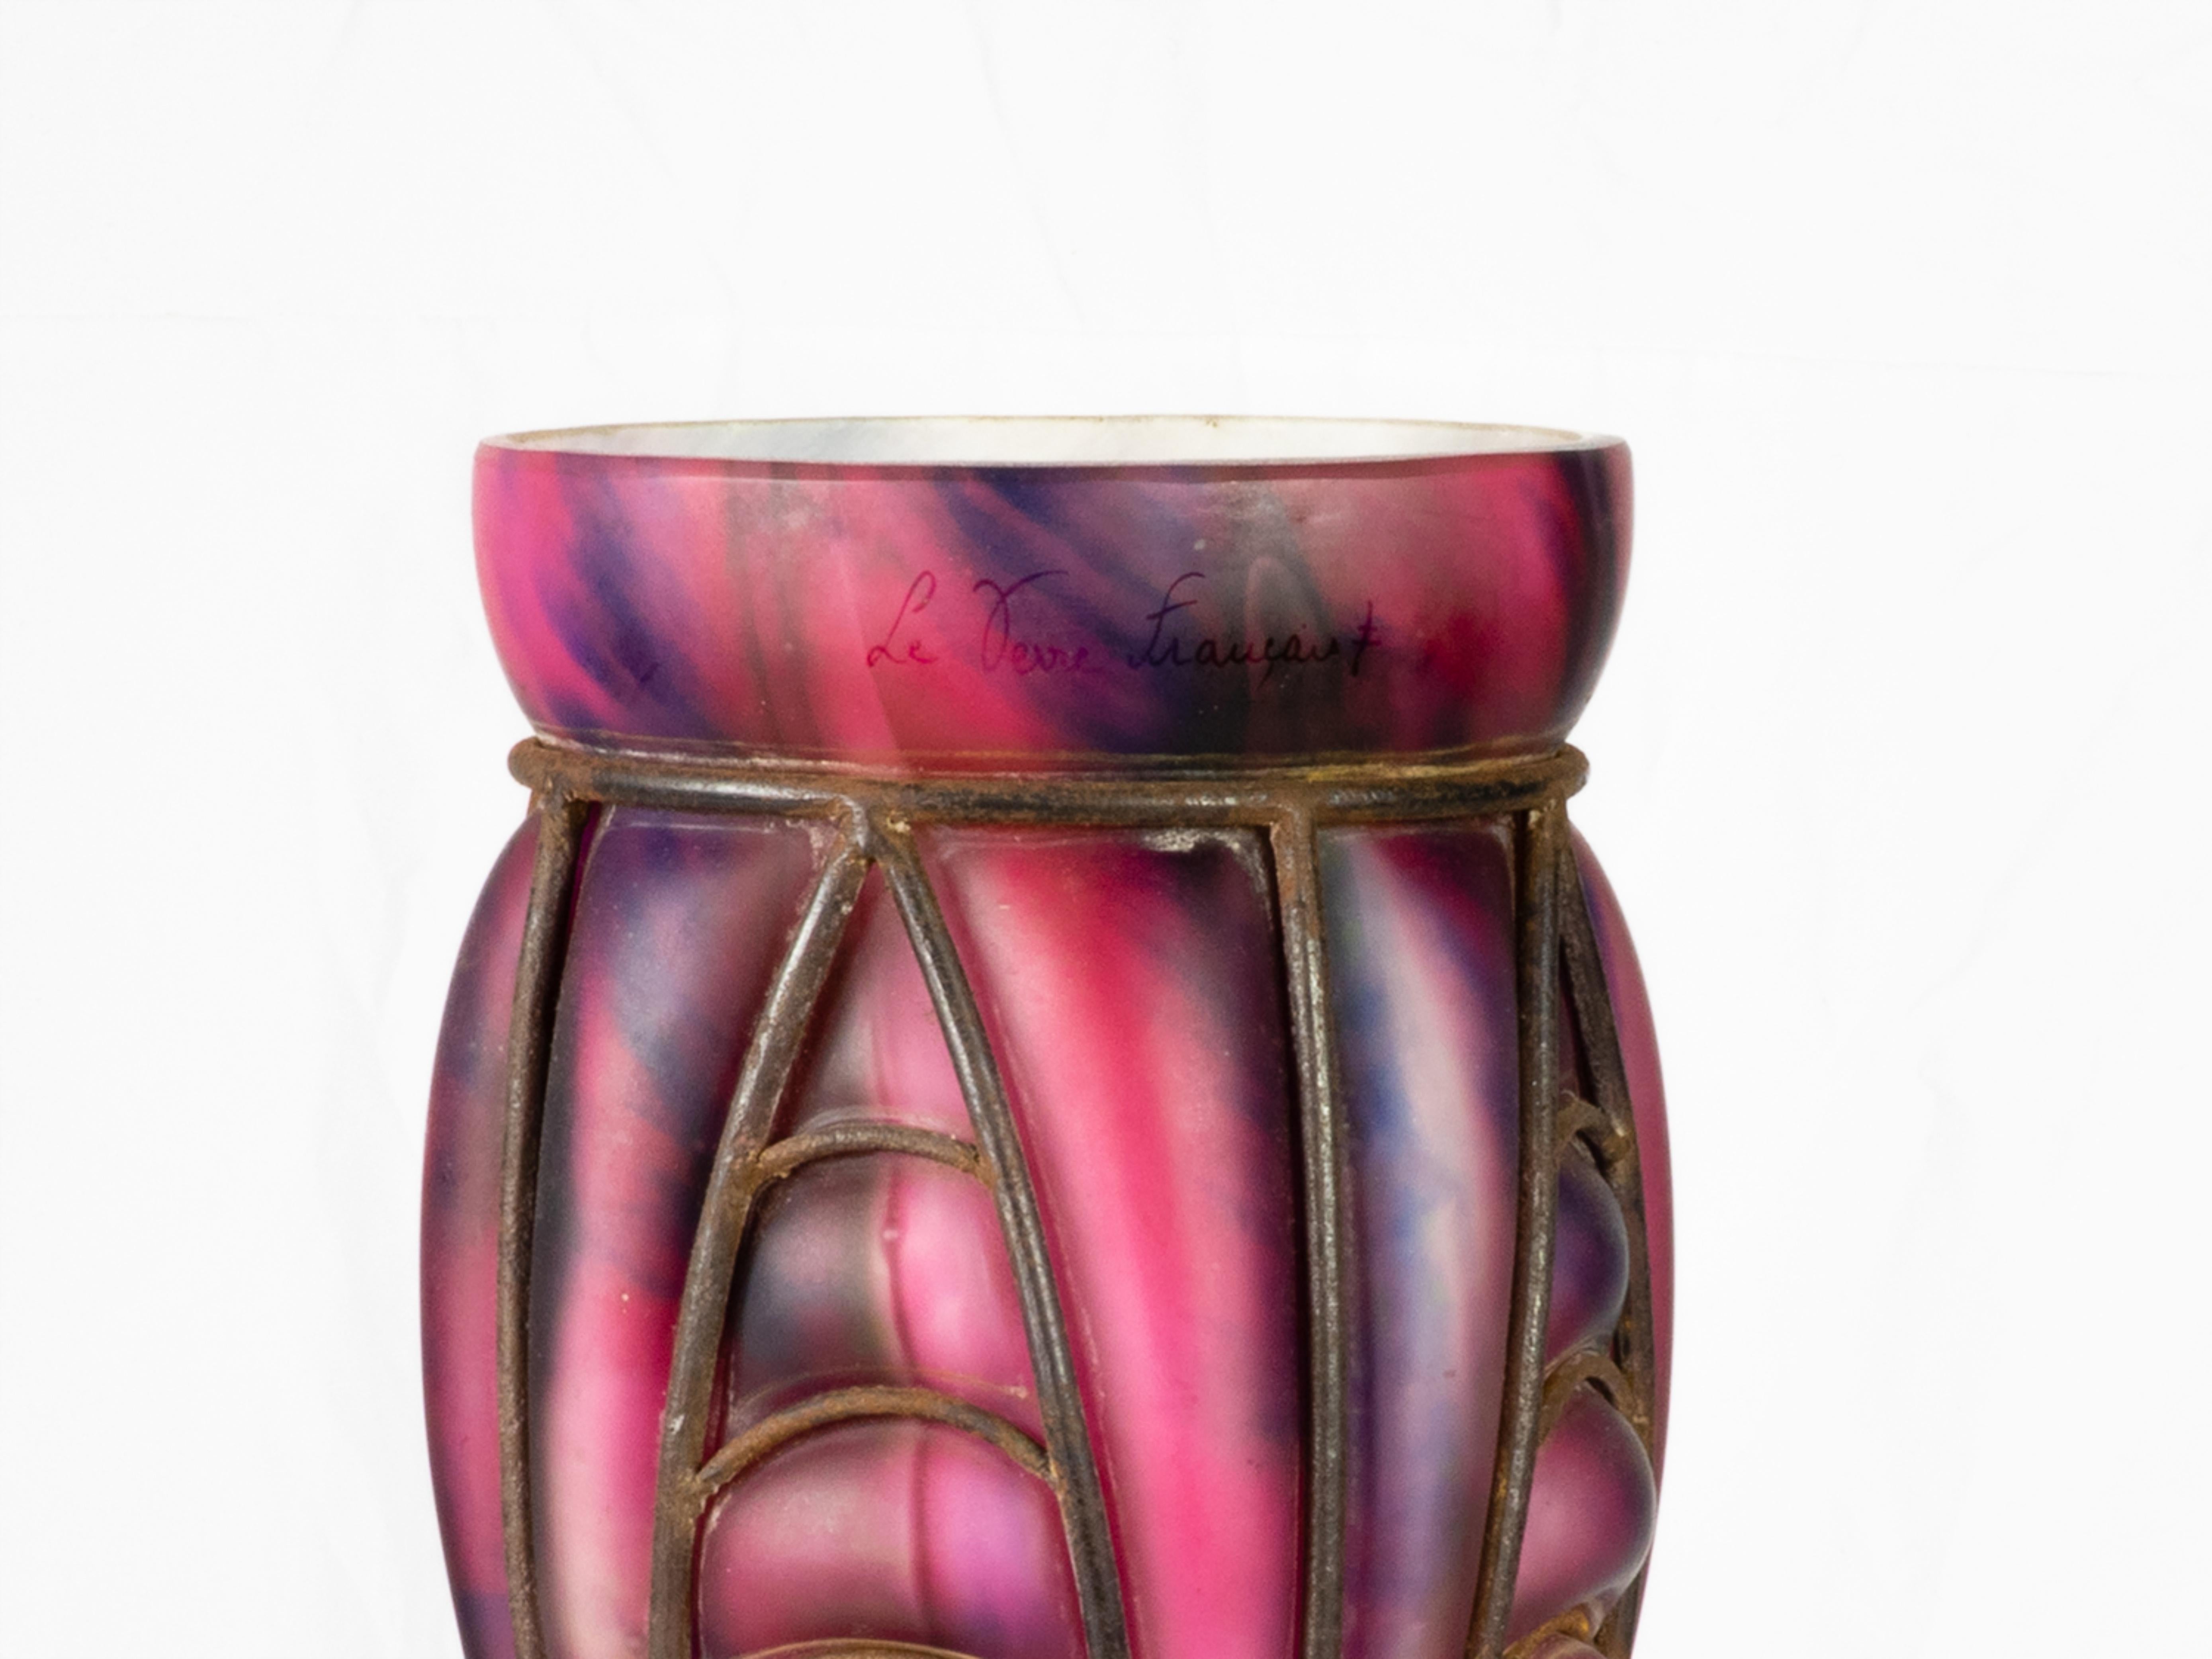 Vase en verre de la Verrerie d'Art Lorrain avec armure en fer forgé dans le style Majorelle, provenant de Croismare, près de Nancy, l'une des plaques tournantes de l'art lorrain.  de la fabrication du verre.
Il présente une partie supérieure marbrée